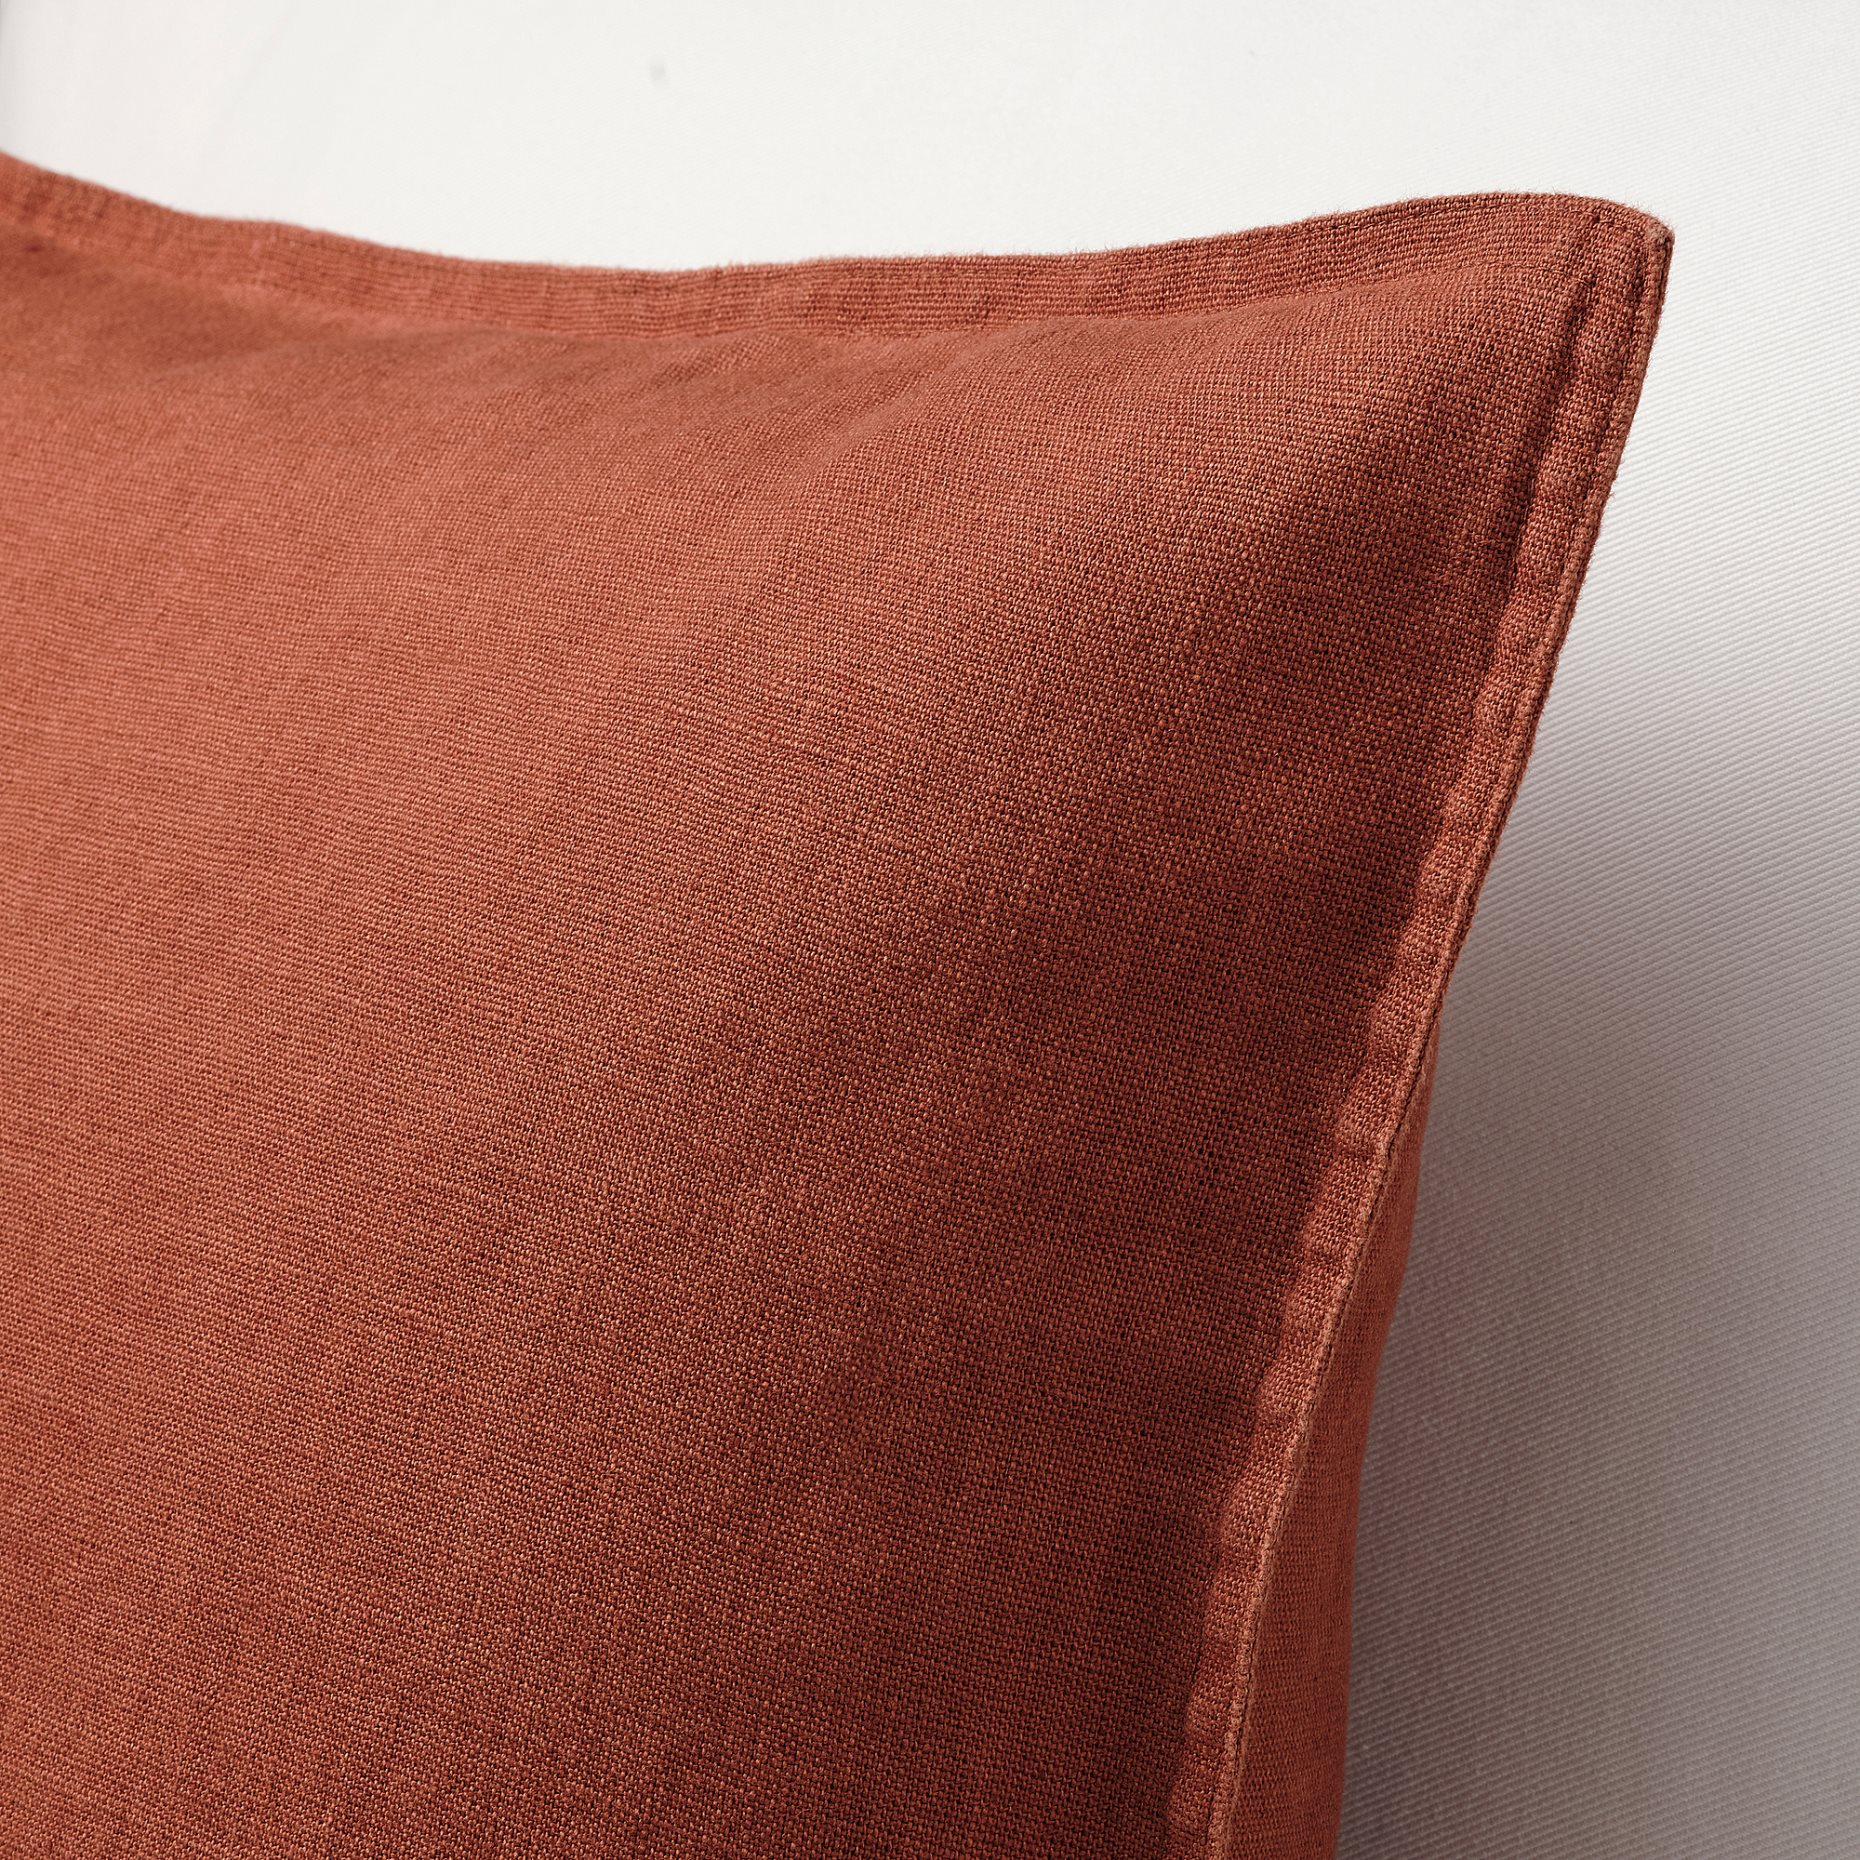 DYTÅG, cushion cover, 50x50 cm, 105.176.82